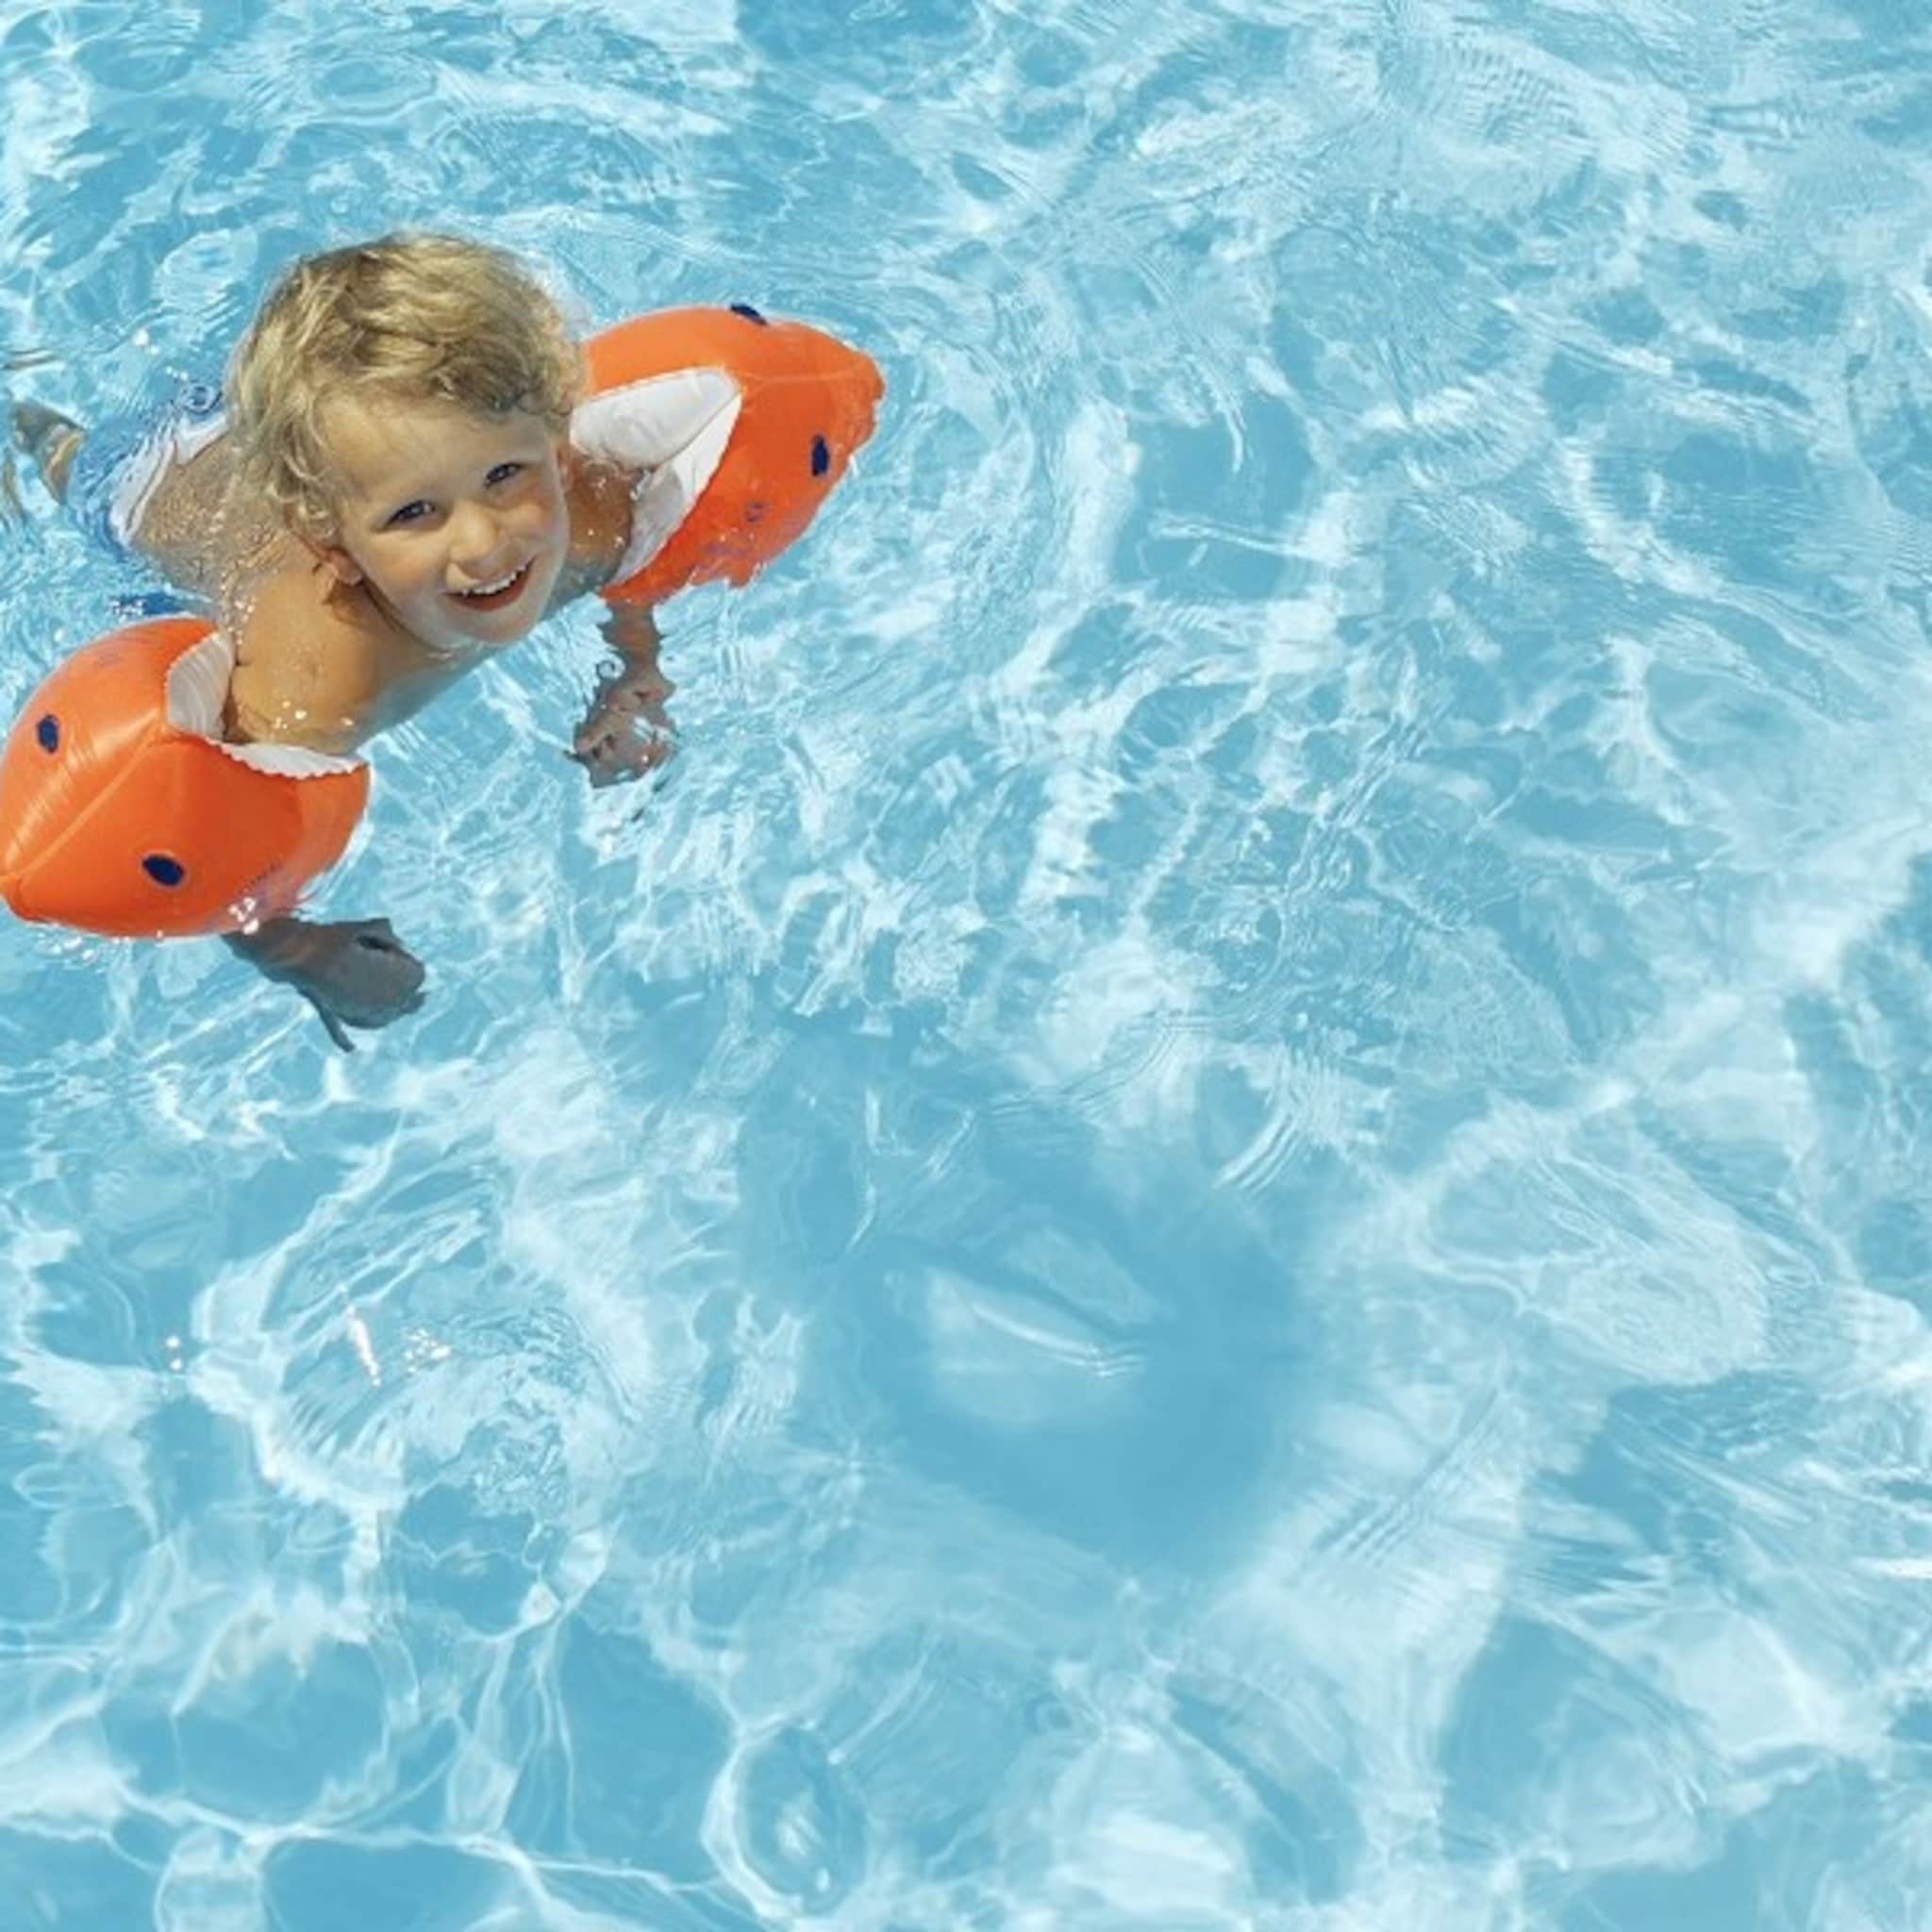 je-kind-op-tijd-inschrijven-voor-zwemles-veel-wachtlijsten-van-ruim-een-jaar